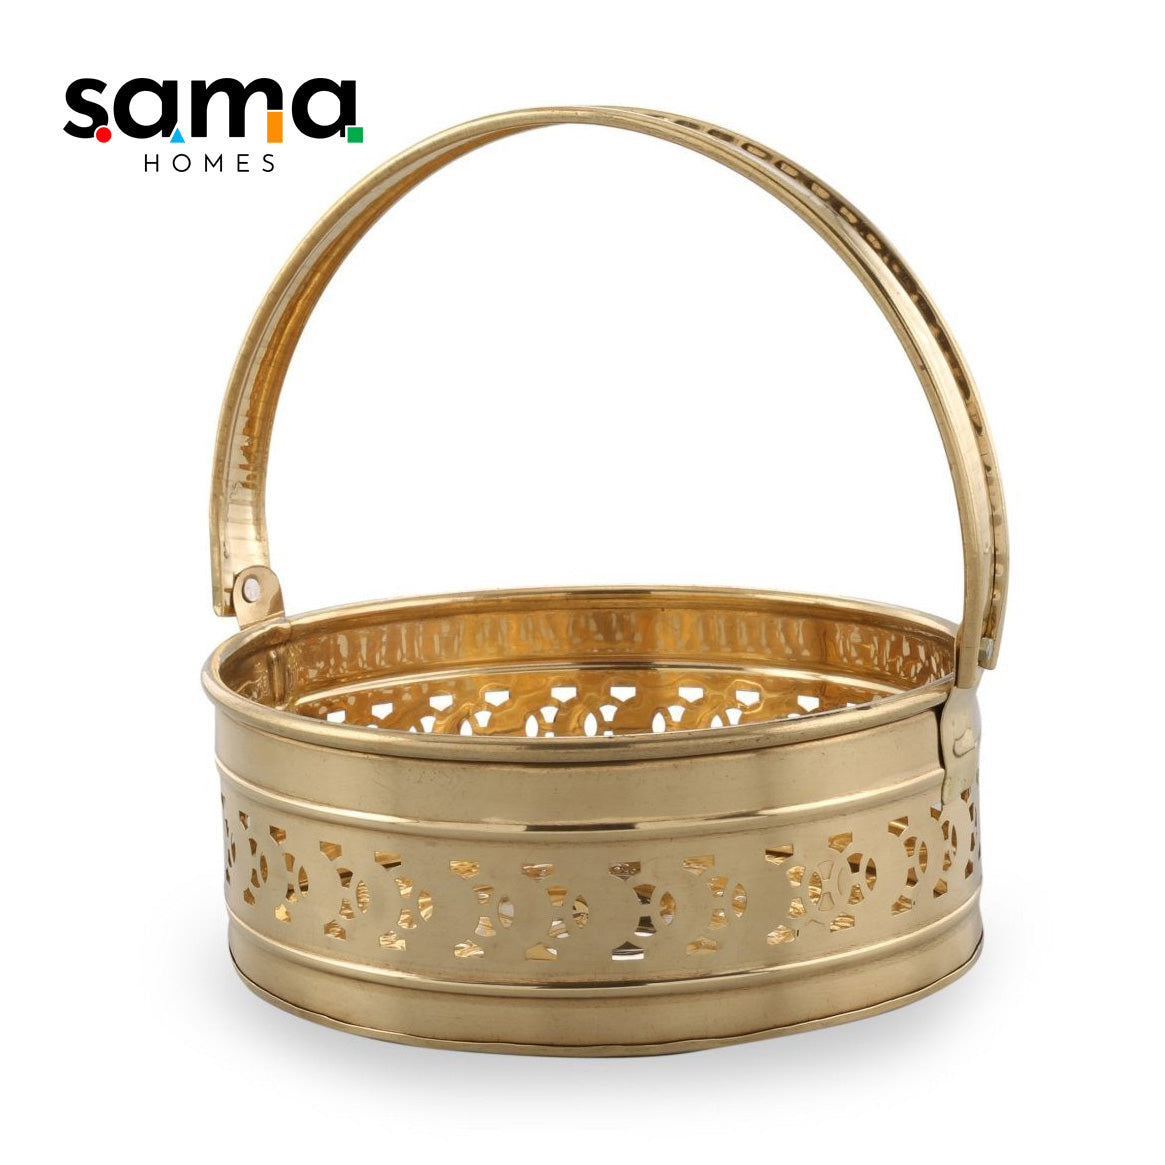 SAMA Homes - brass pooja basket